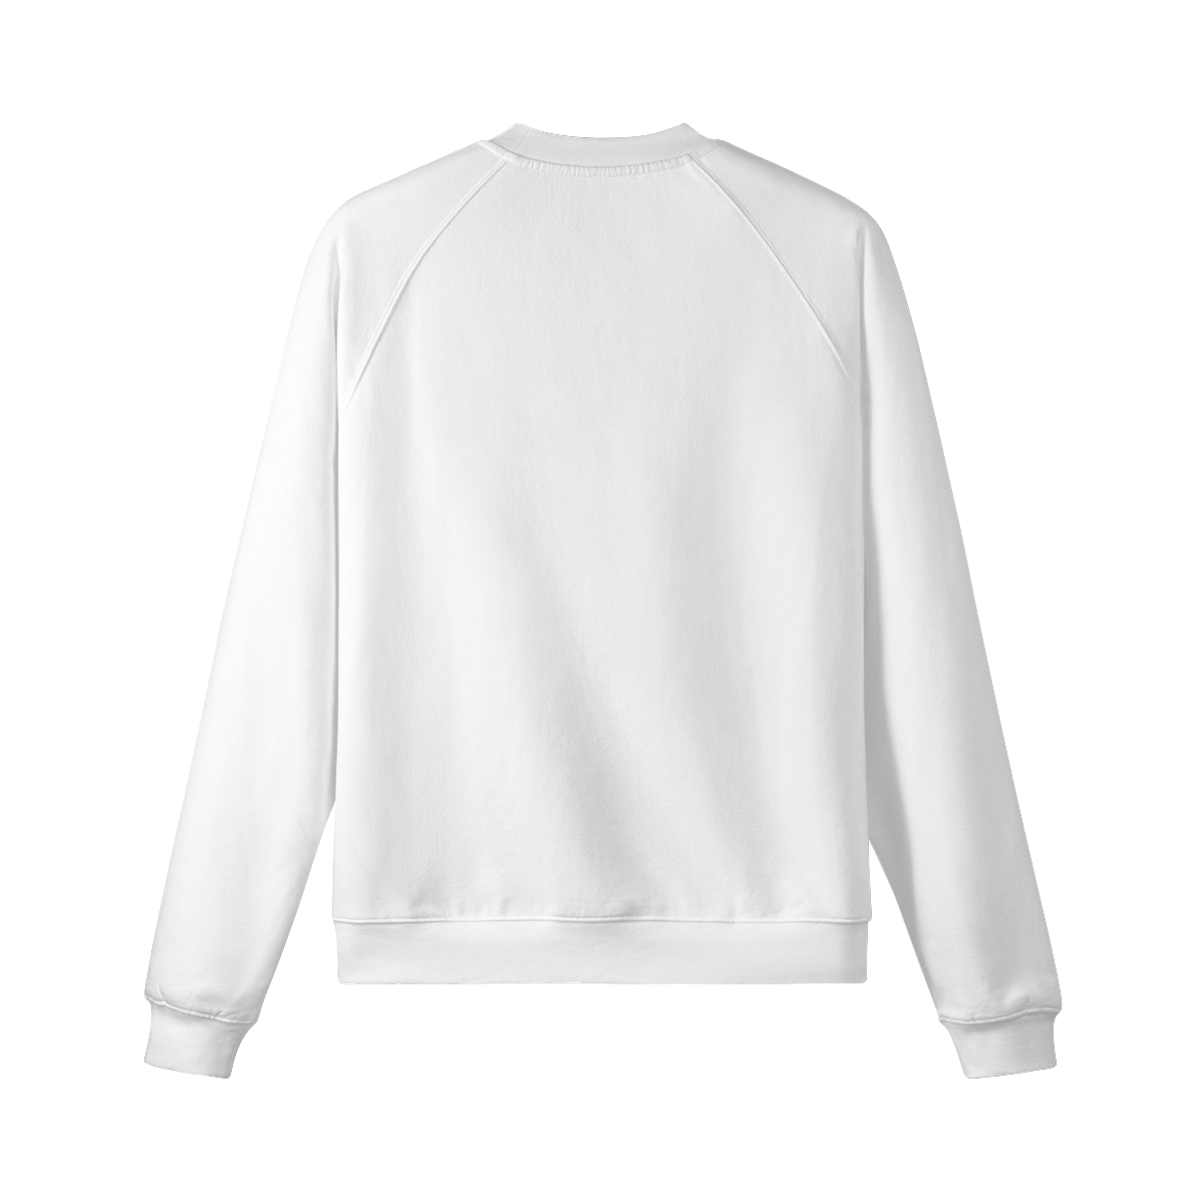 3RAVE MOM - Unisex Fleece-lined Sweatshirt - back - whtie